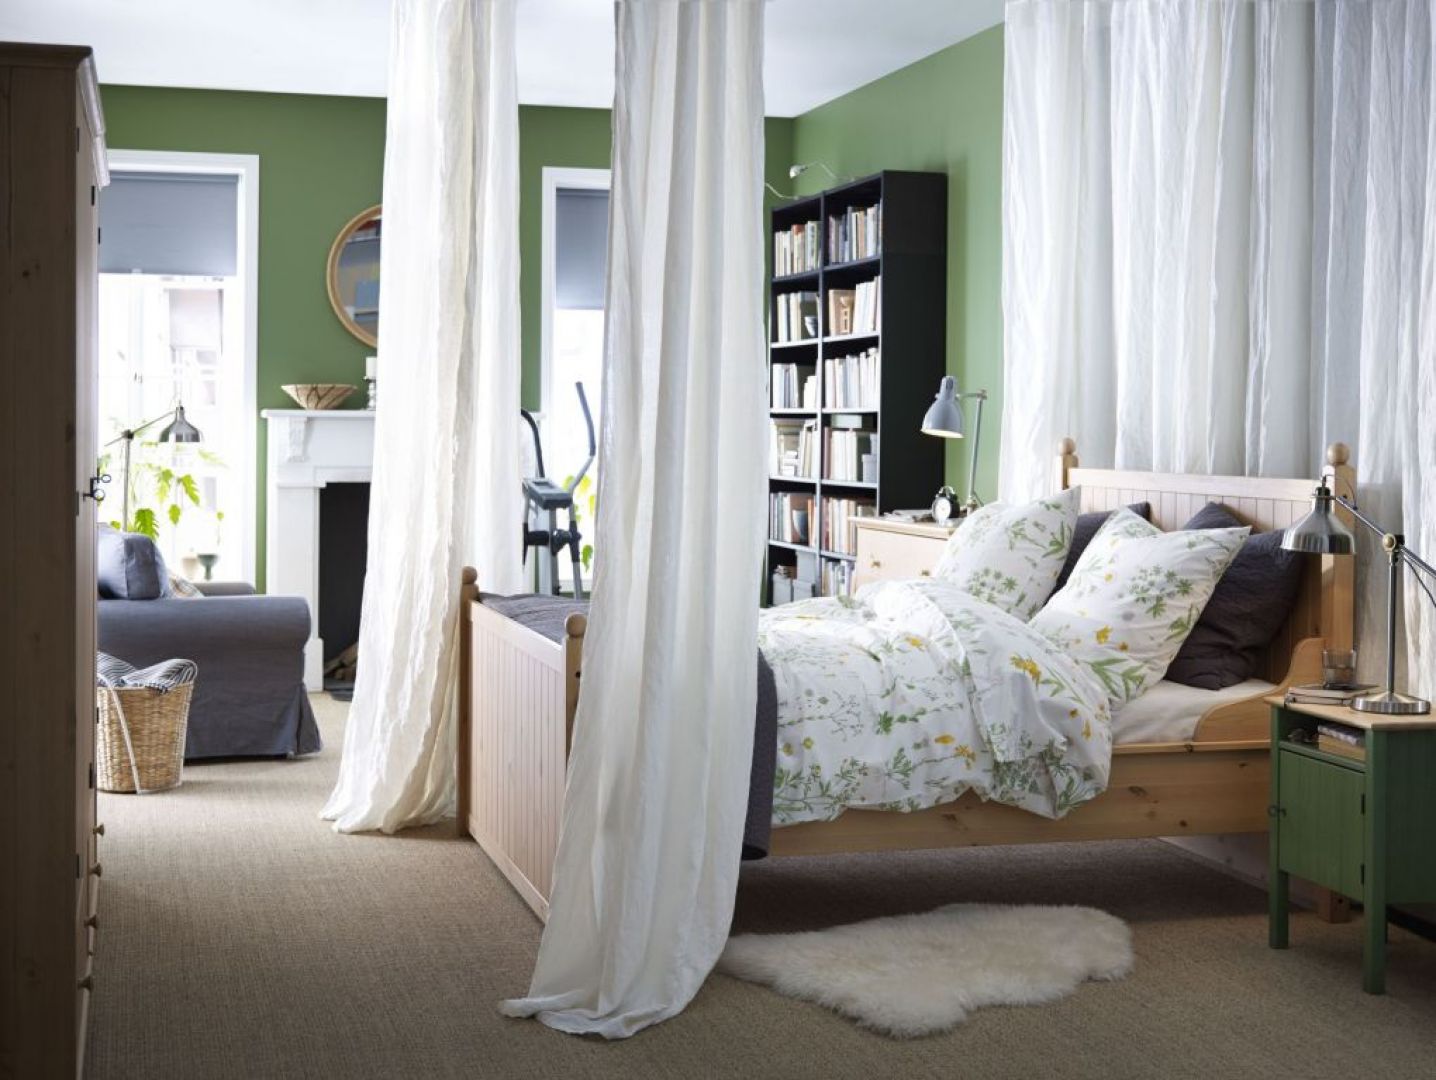 Łóżko z serii Hurdal nada wnętrzu ciepły i bardzo naturalny styl. Fot. IKEA